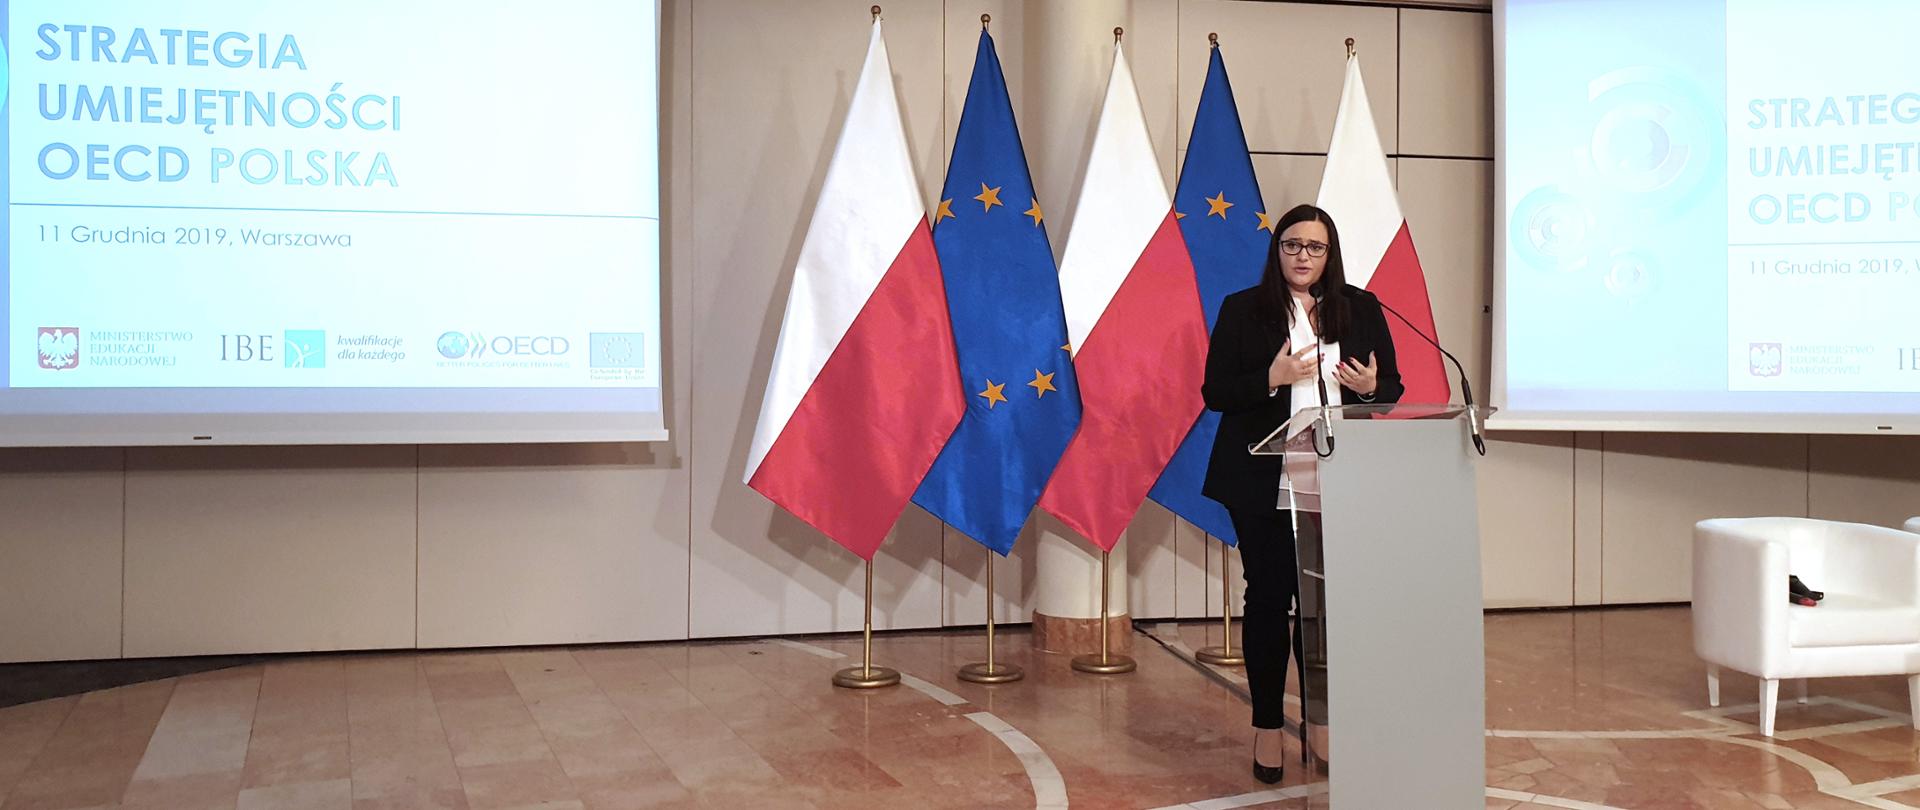 minister Małgorzata Jarosińska-Jedynak mówi do mikrofonu stojąc przed mównicą, za nią stoją flagi Polski i Unii Europejskiej, obok flag są ekrany z napisem "Strategia umiejętności OECD: Polska, 11 grudnia 2019 , Warszawa